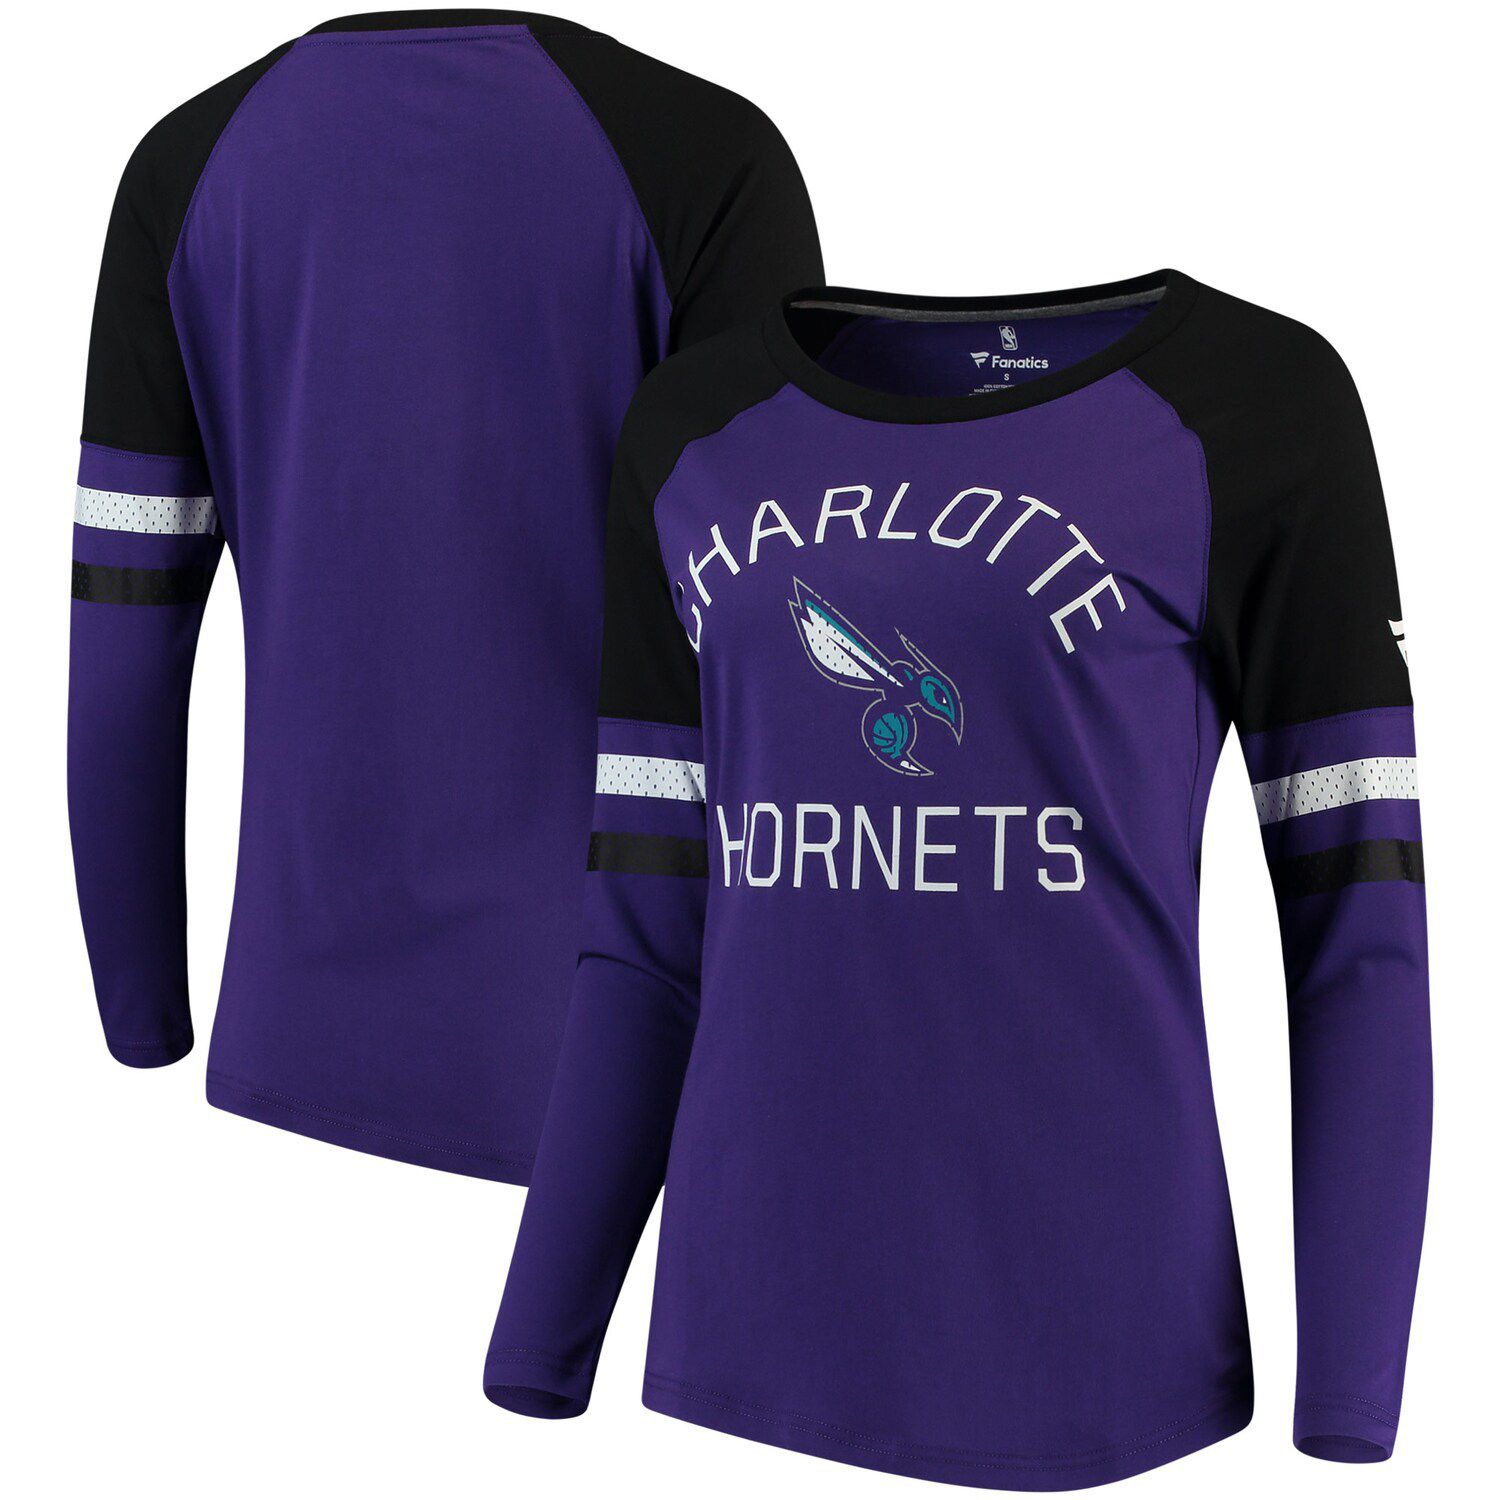 hornets violet jersey